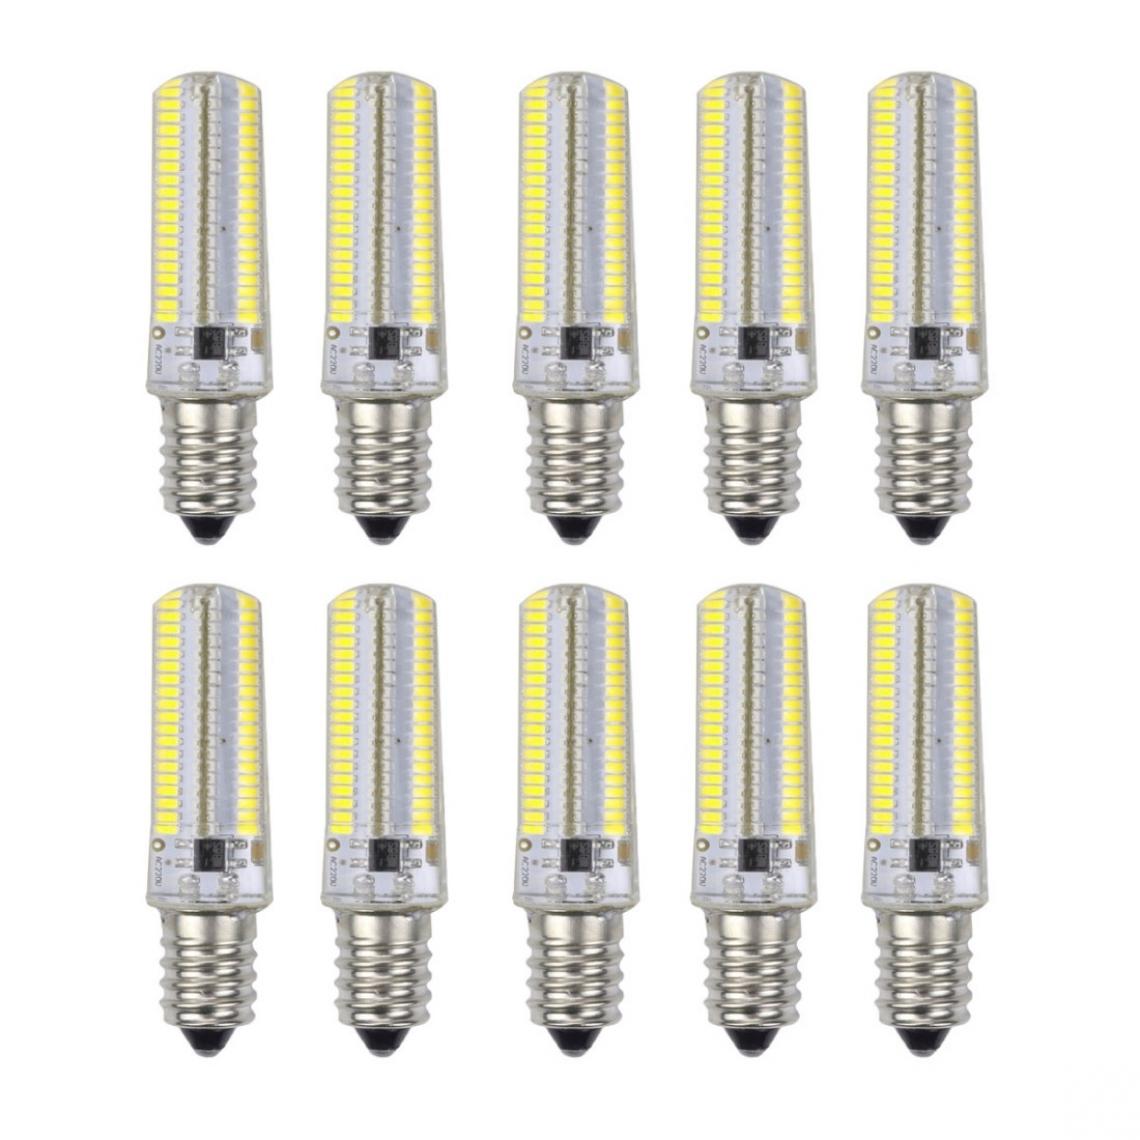 Wewoo - 10 PCS E12 7W 152 LED 3014 SMD 600-700 LM ampoules de maïs en silicone à intensité variable et blanc froidCA 220V - Ampoules LED